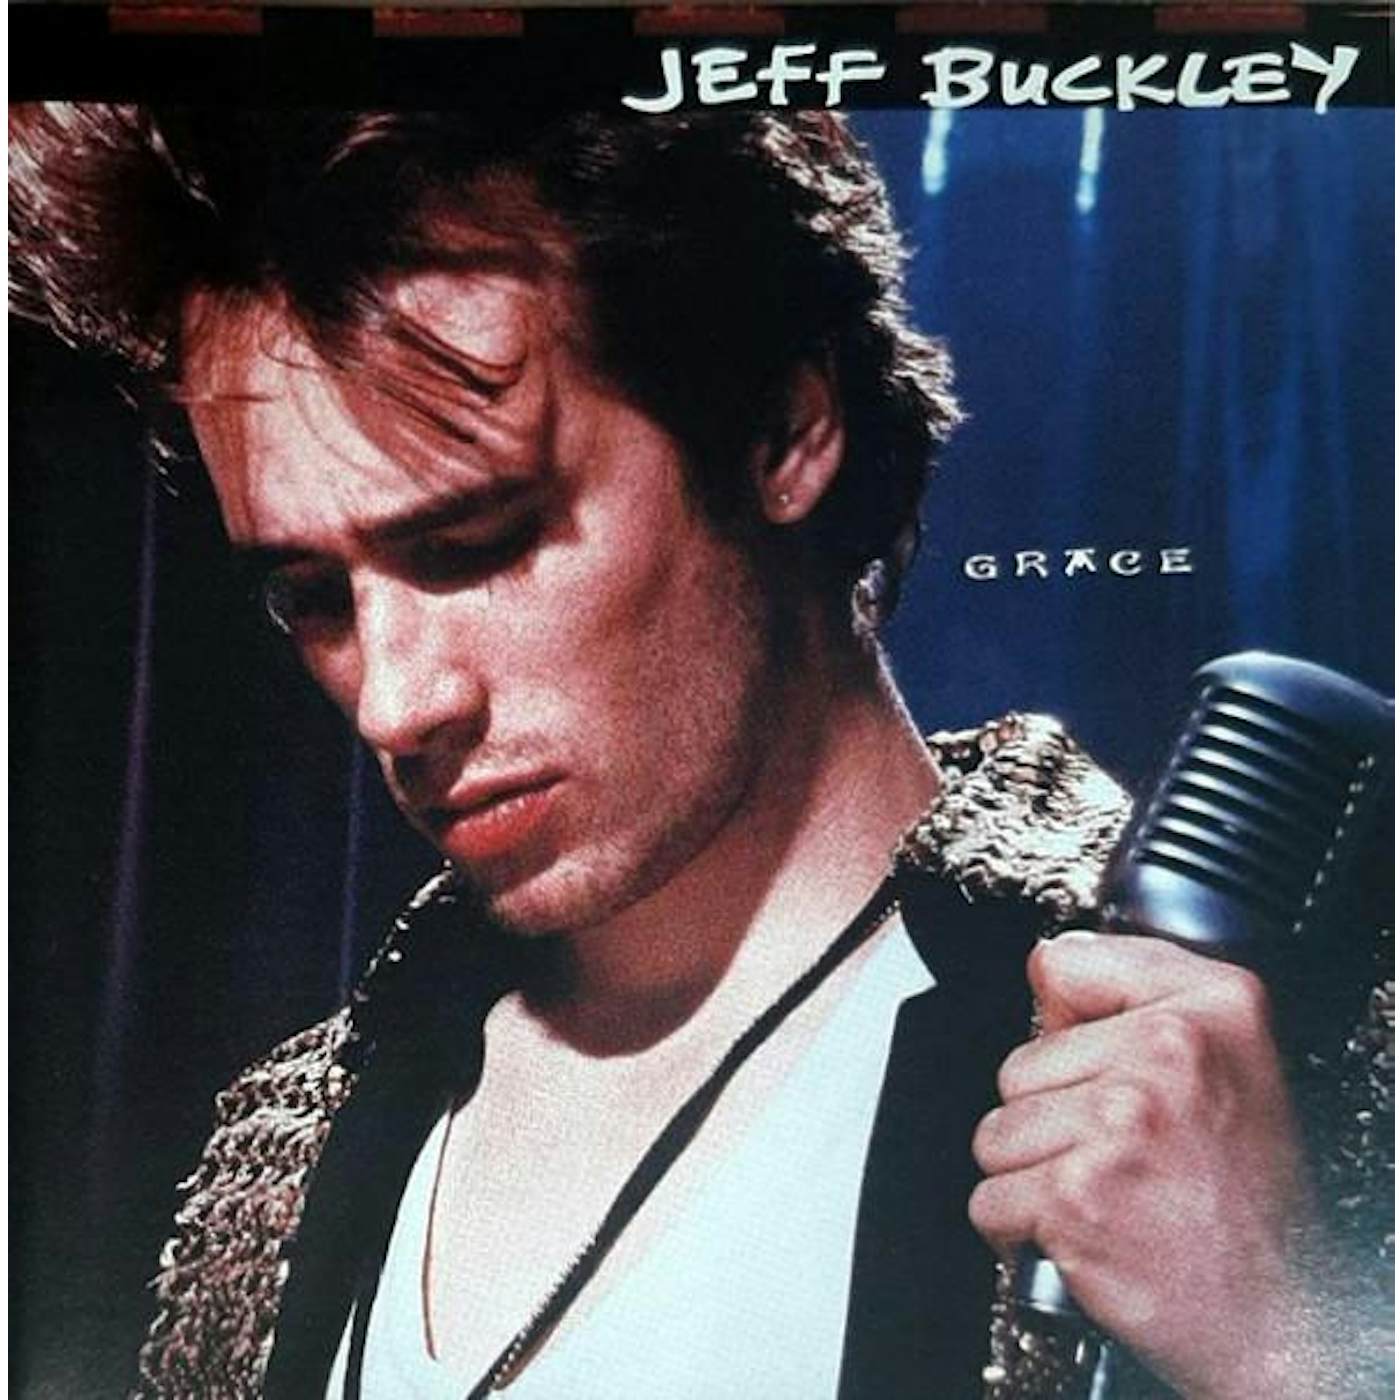 Jeff Buckley GRACE CD